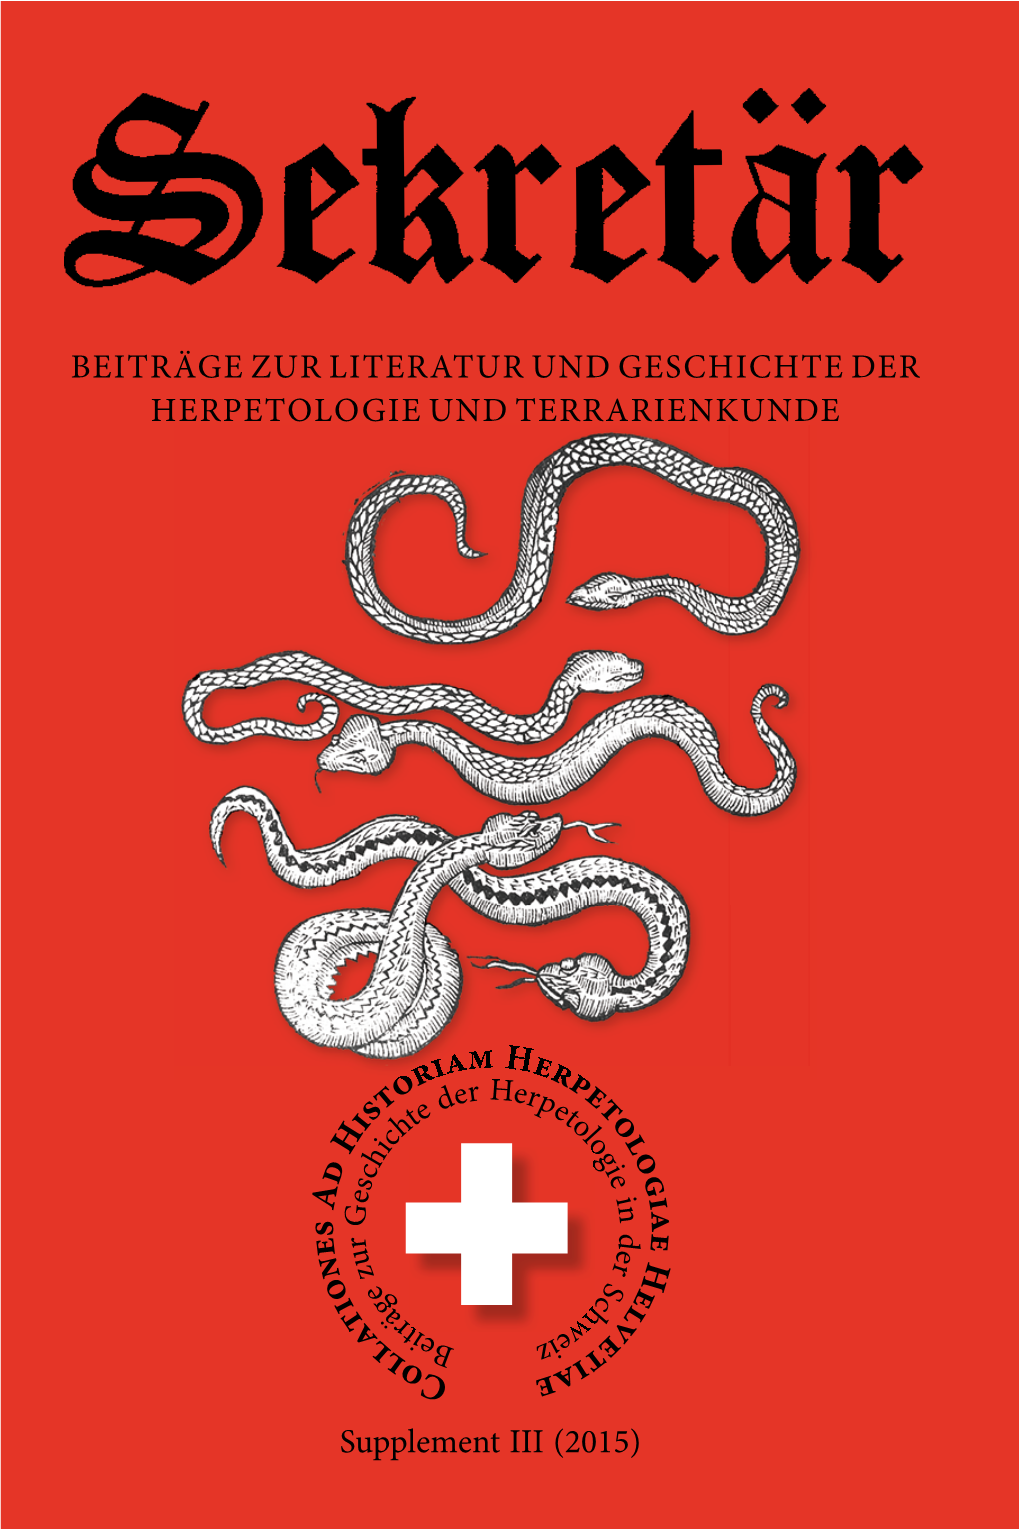 BEITRÄGE ZUR LITERATUR UND GESCHICHTE DER HERPETOLOGIE UND TERRARIENKUNDE Supplement